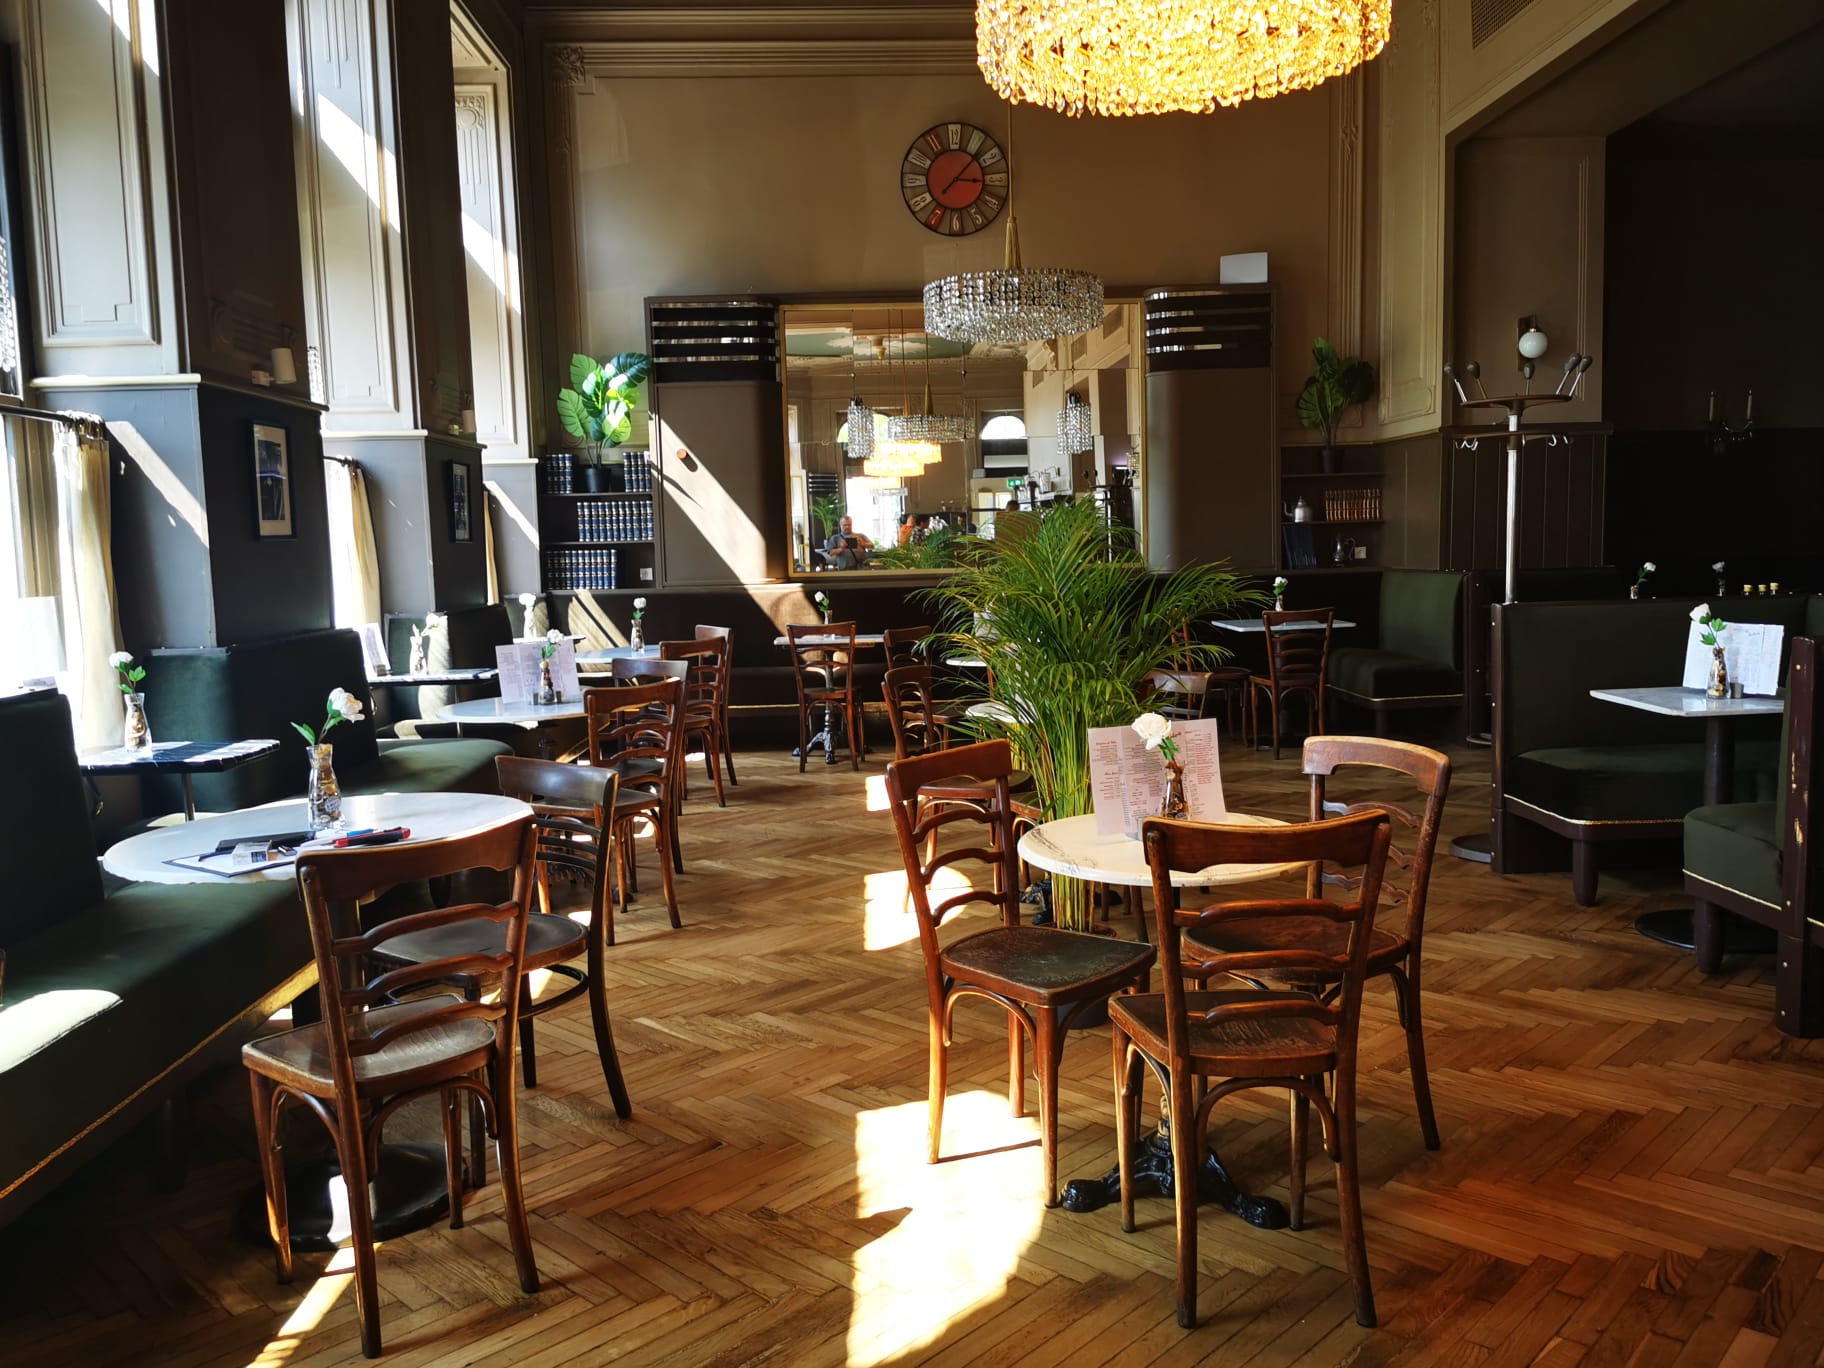 Willkommen beim Soft Opening des Café Westend – Ein kulinarisches Erlebnis im Herzen Wiens